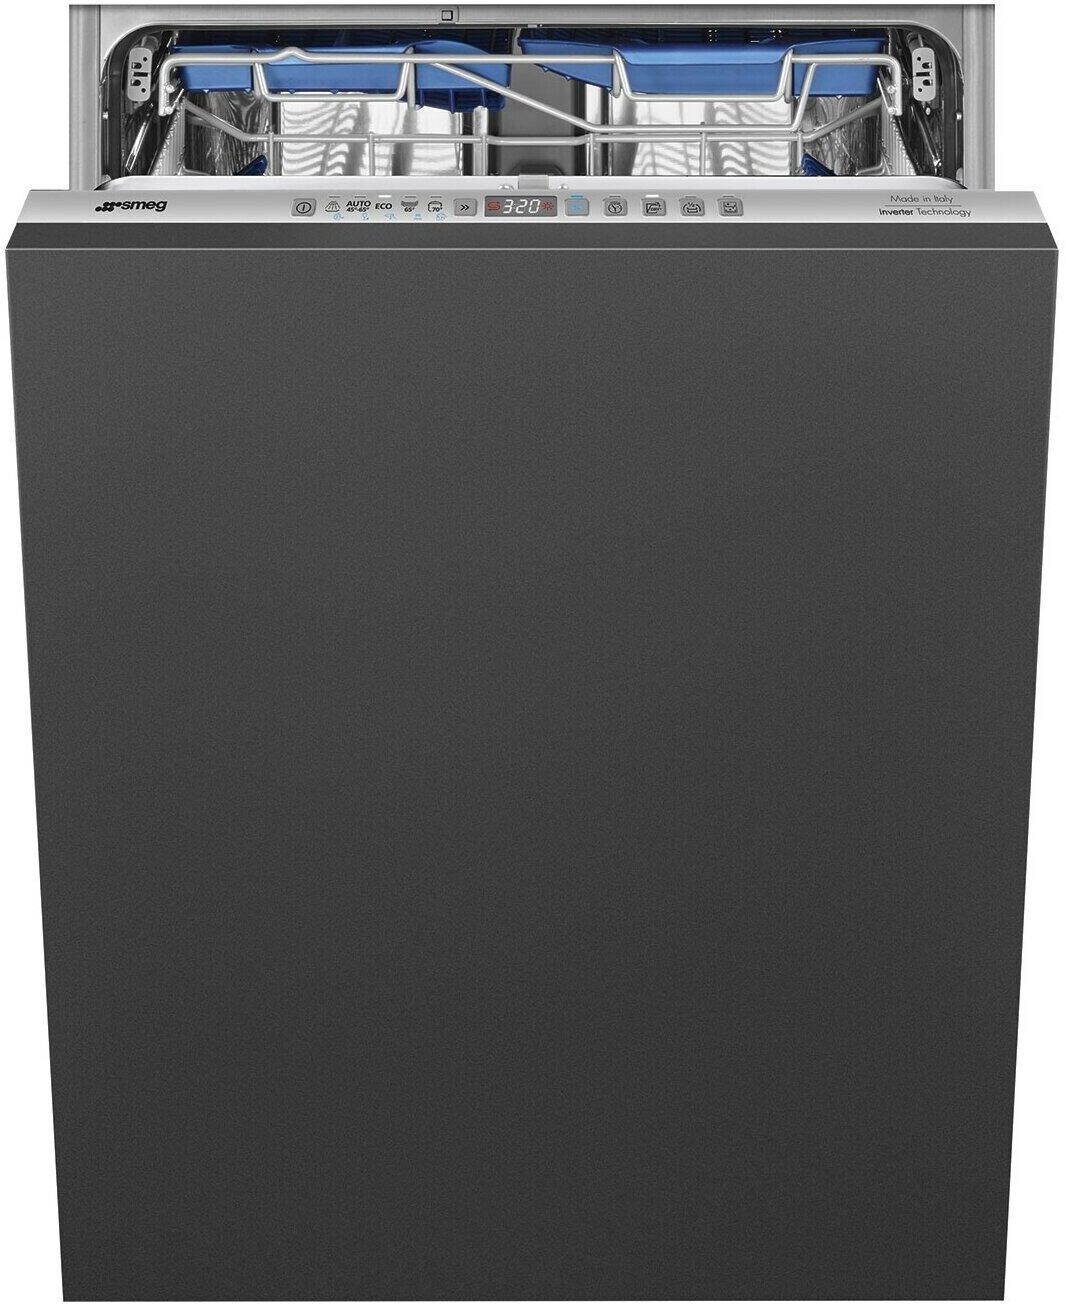 Встраиваемая посудомоечная машина Smeg STL323BQLH